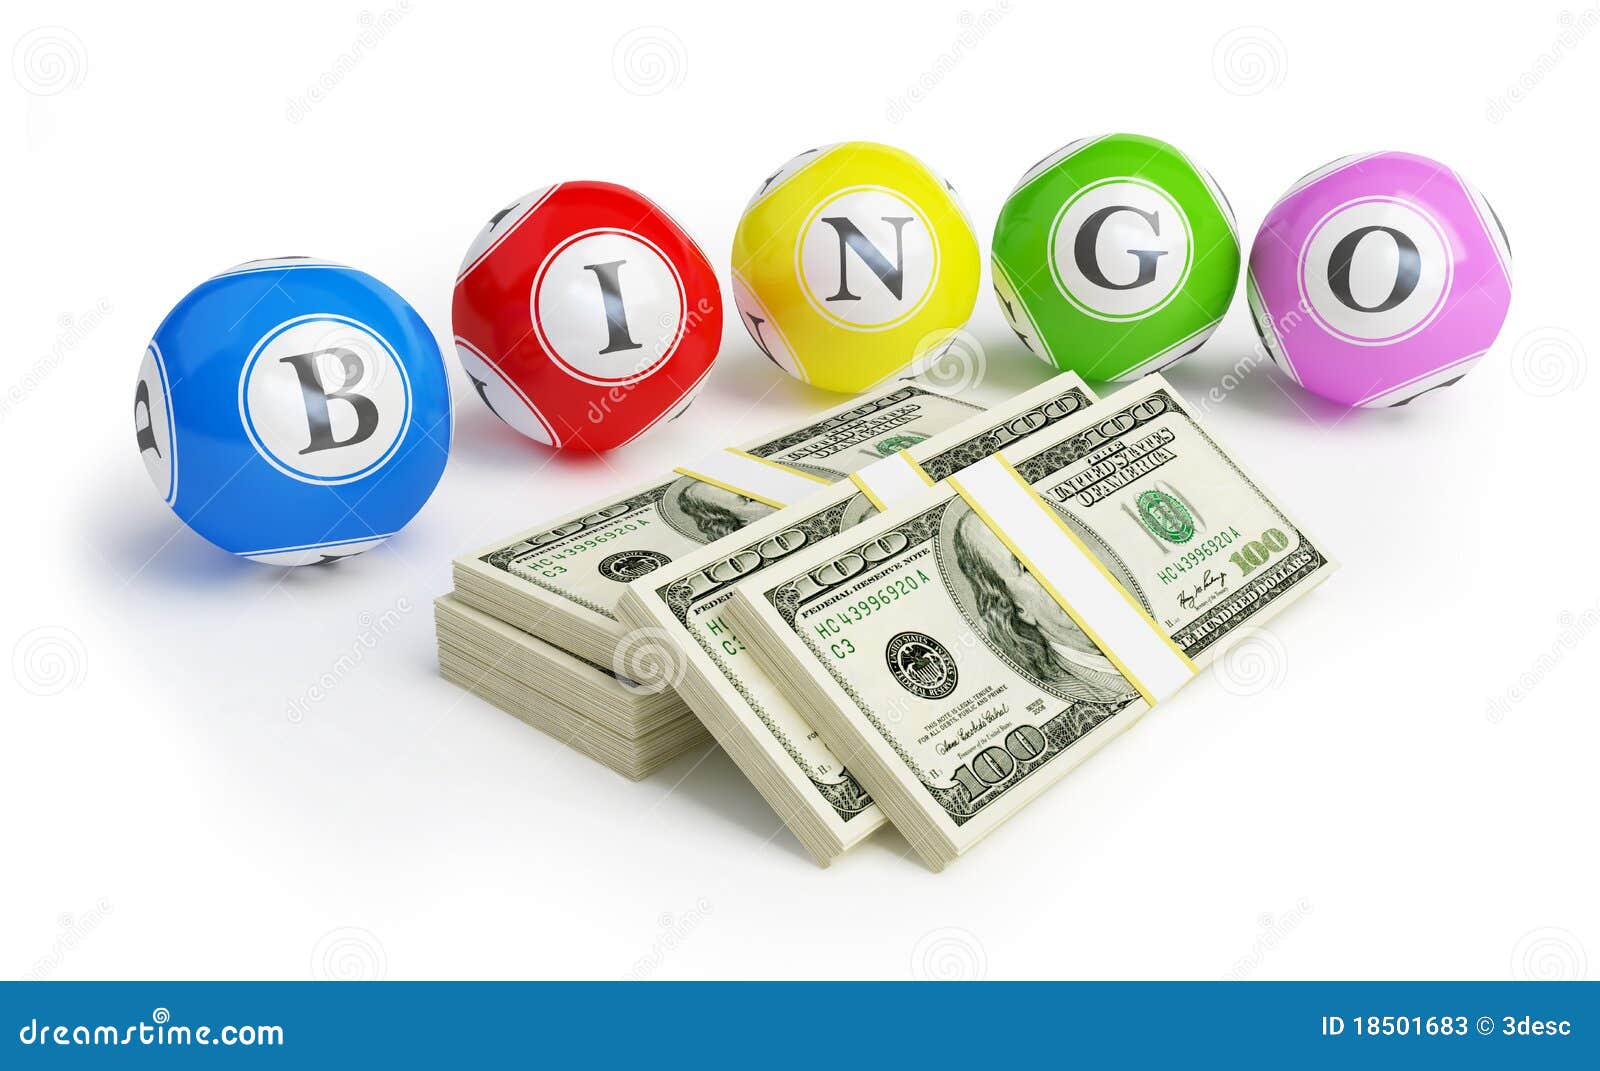 bingo-balls-dollars-stock-illustration-illustration-of-green-18501683